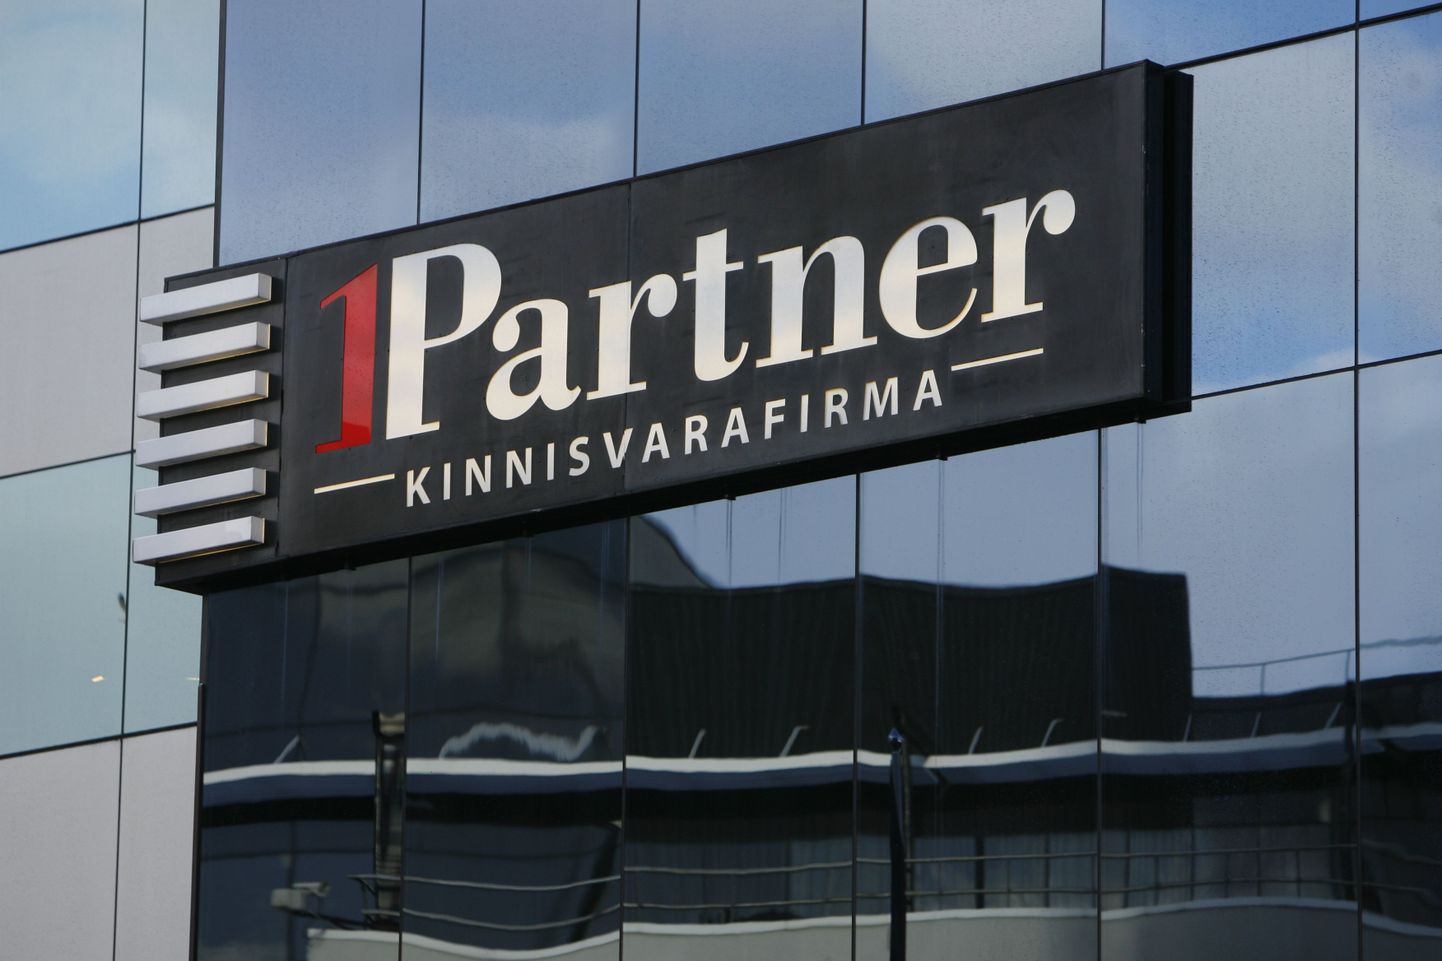 Логотип фирмы 1Partner Kinnisvara.